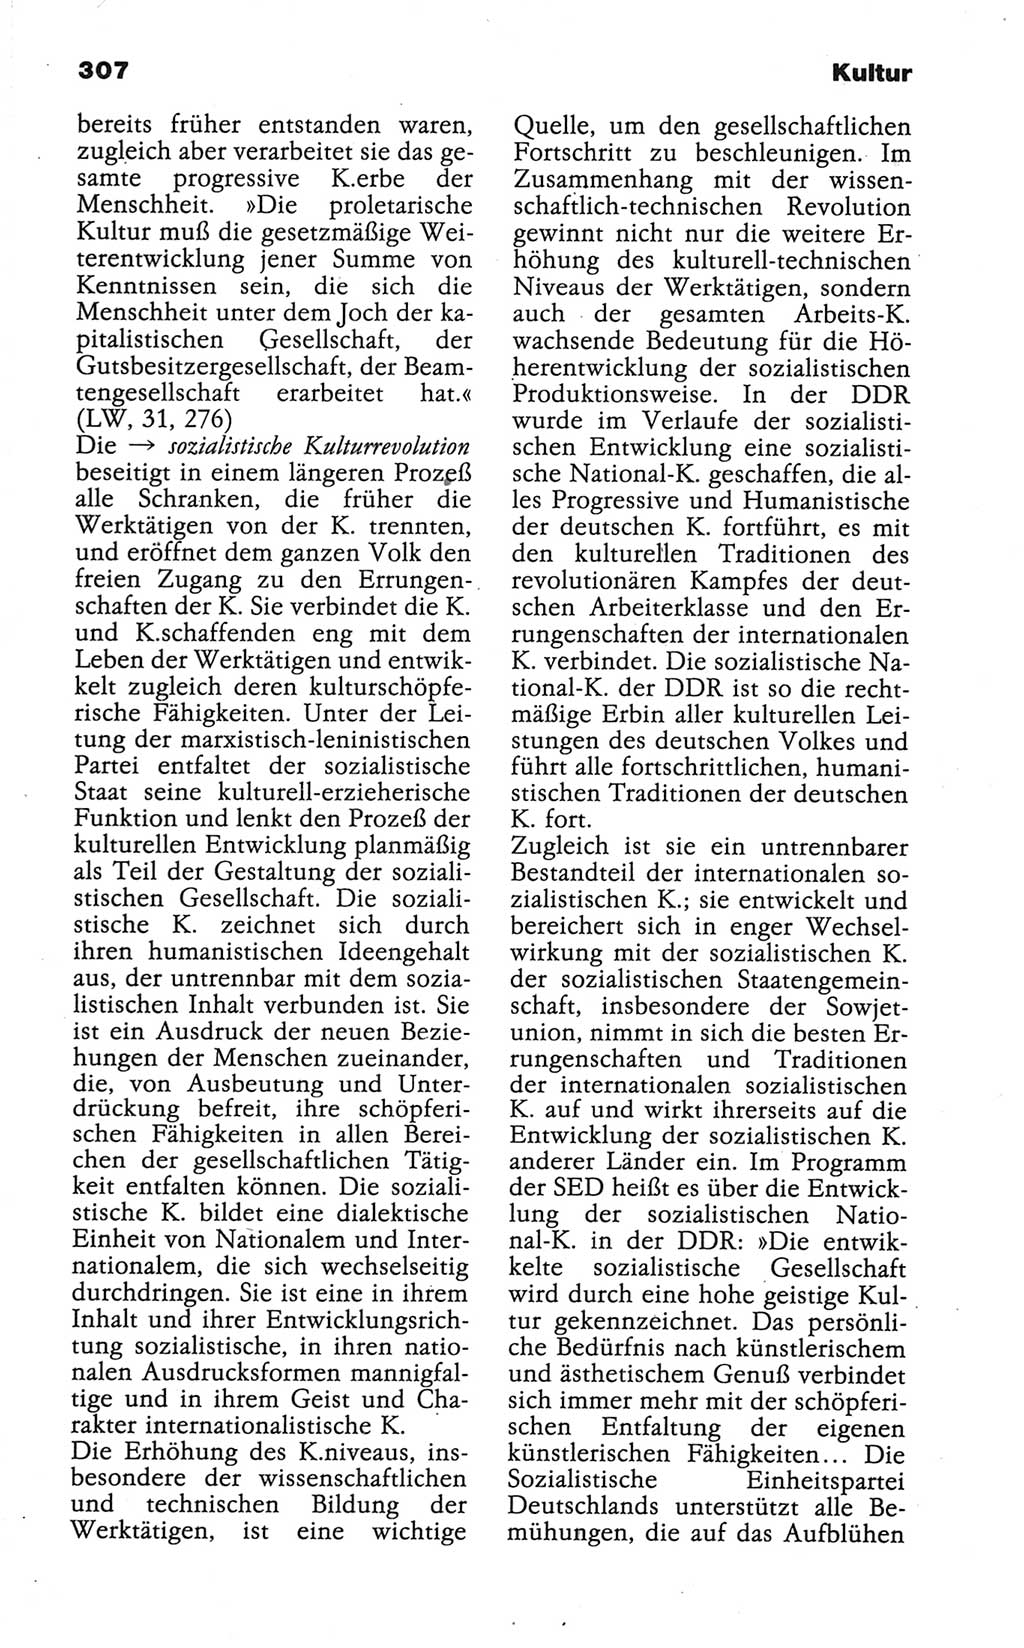 Wörterbuch der marxistisch-leninistischen Philosophie [Deutsche Demokratische Republik (DDR)] 1986, Seite 307 (Wb. ML Phil. DDR 1986, S. 307)